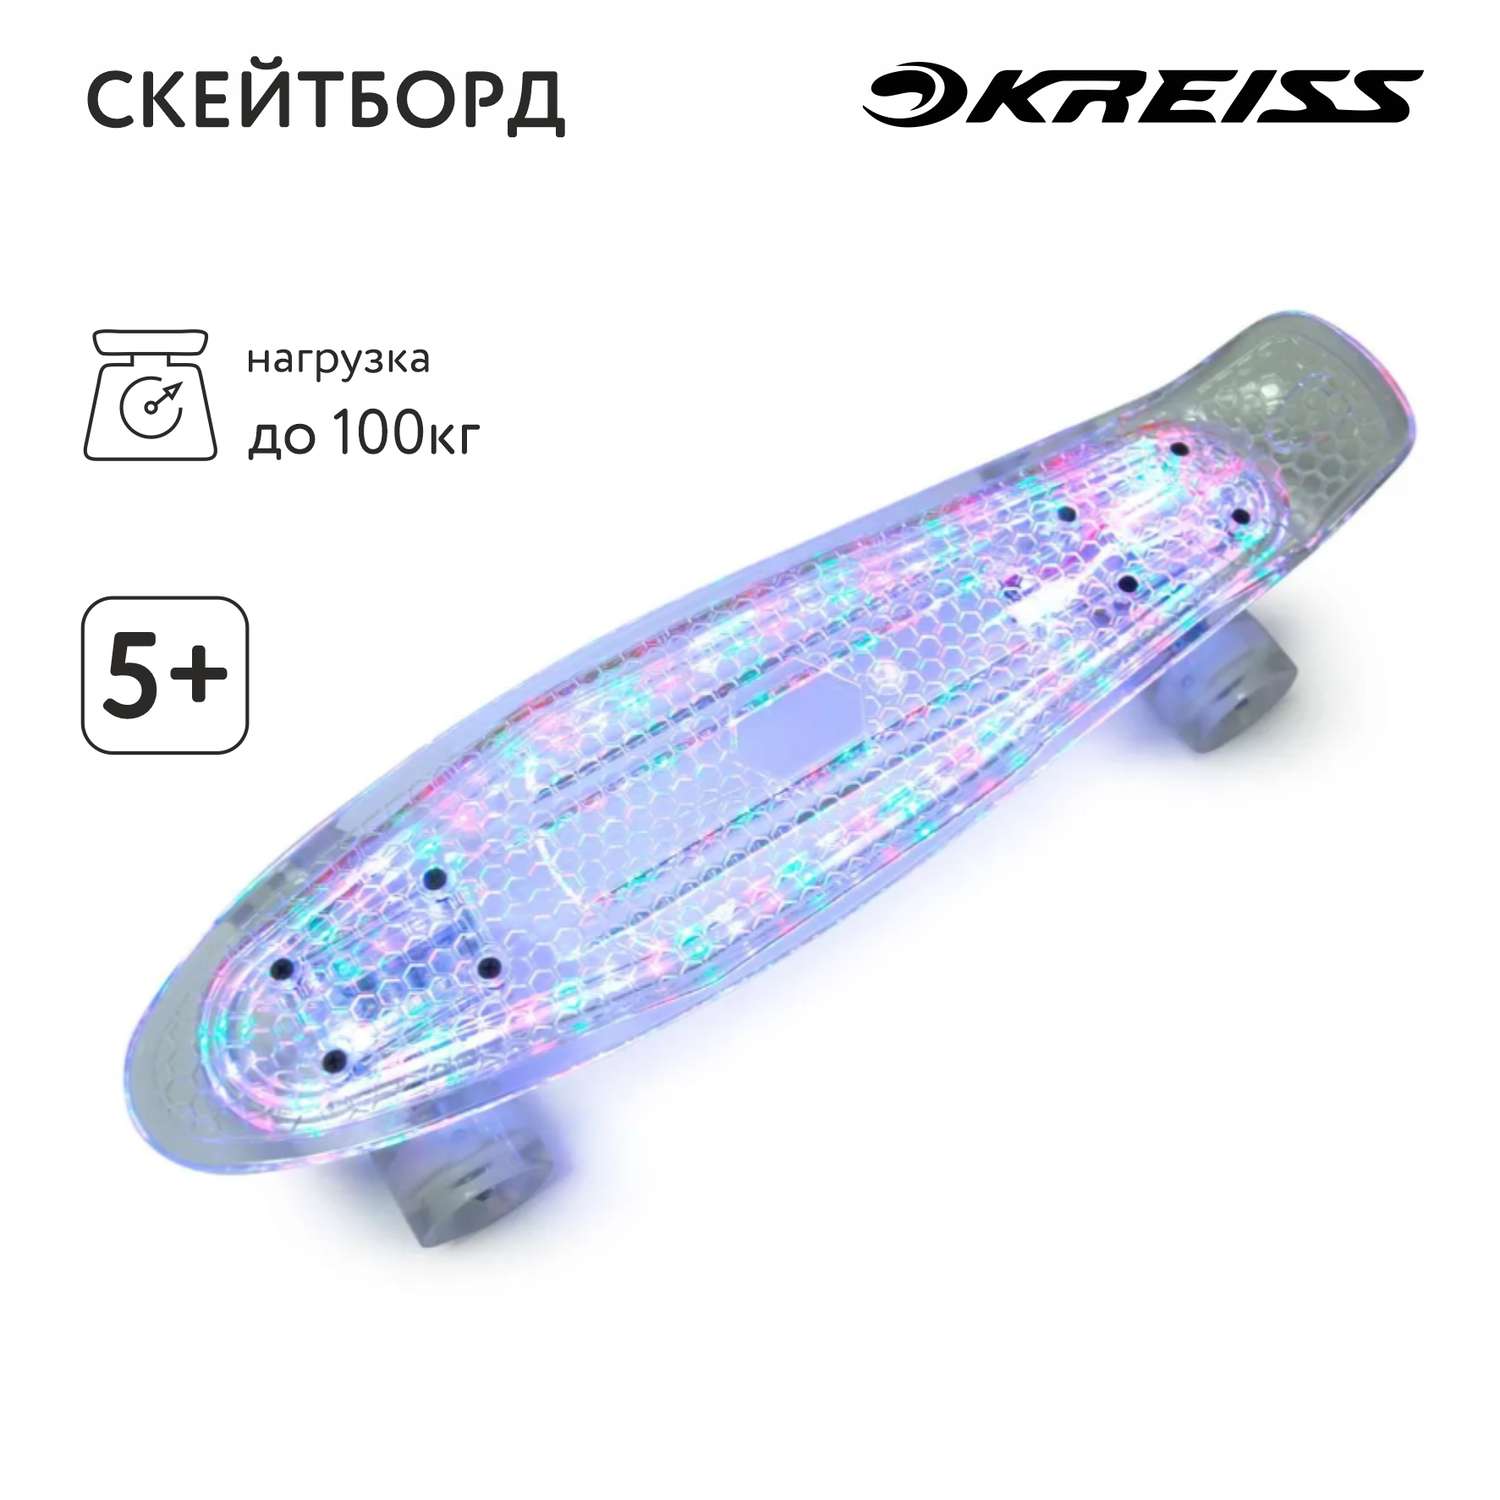 Скейтборд Kreiss с подсветкой T-07 - фото 1